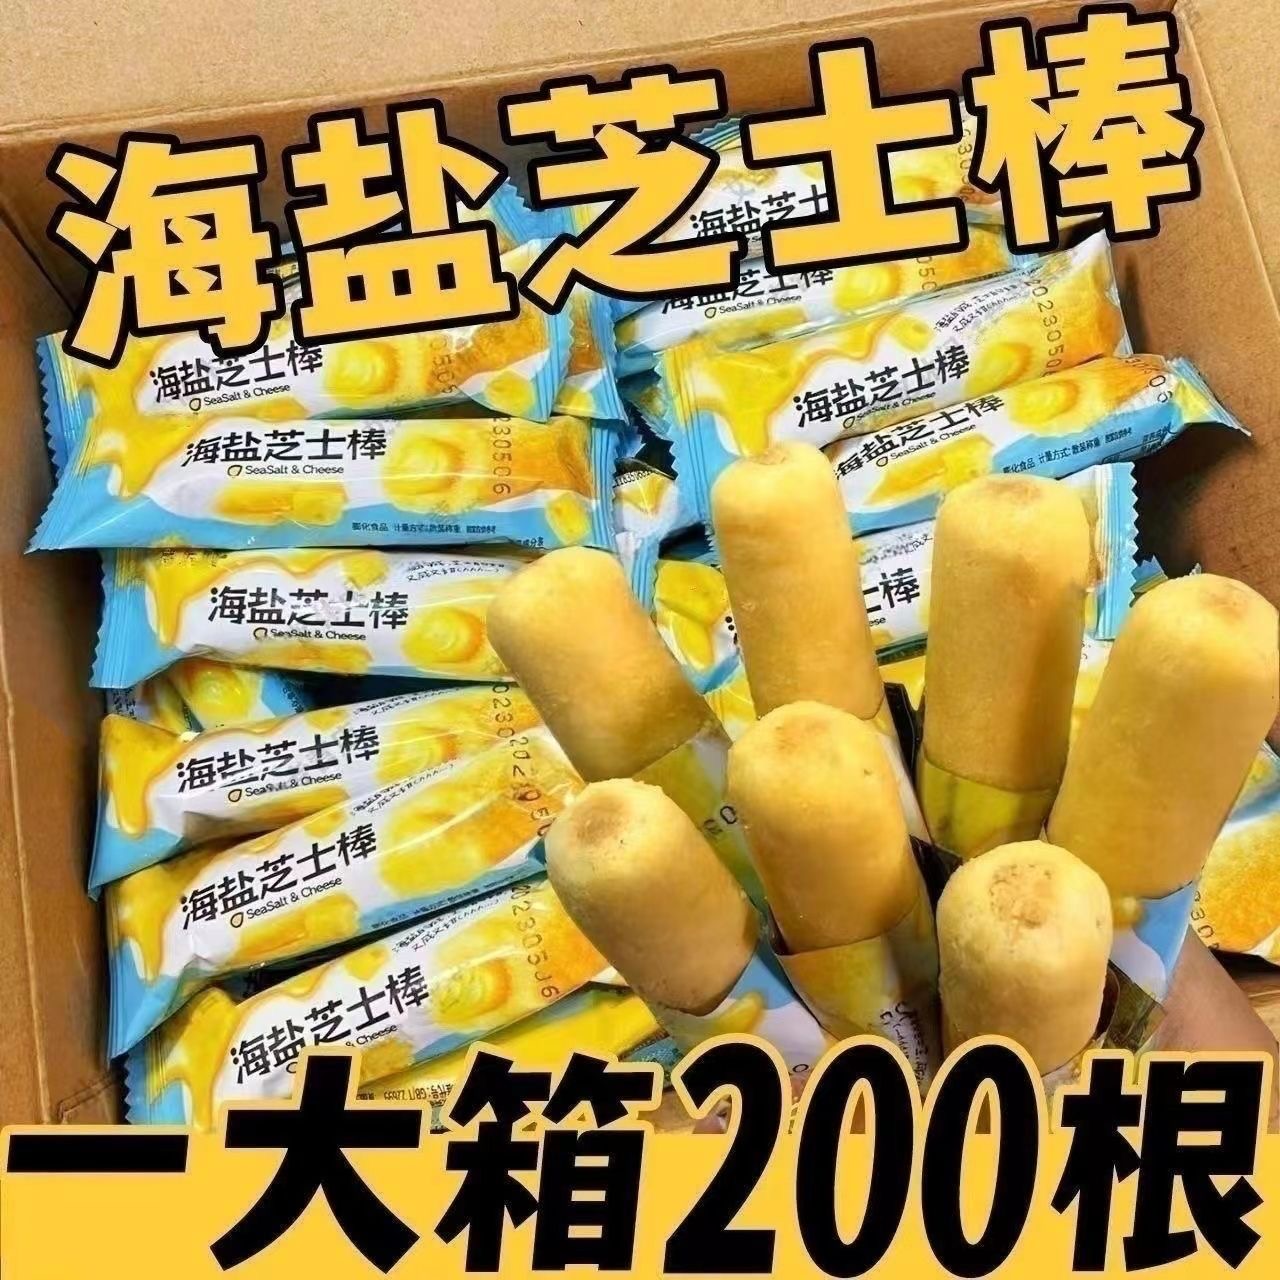 【80根仅7.9】海盐芝士棒夹心饼干米果卷休闲膨化食品儿童零食